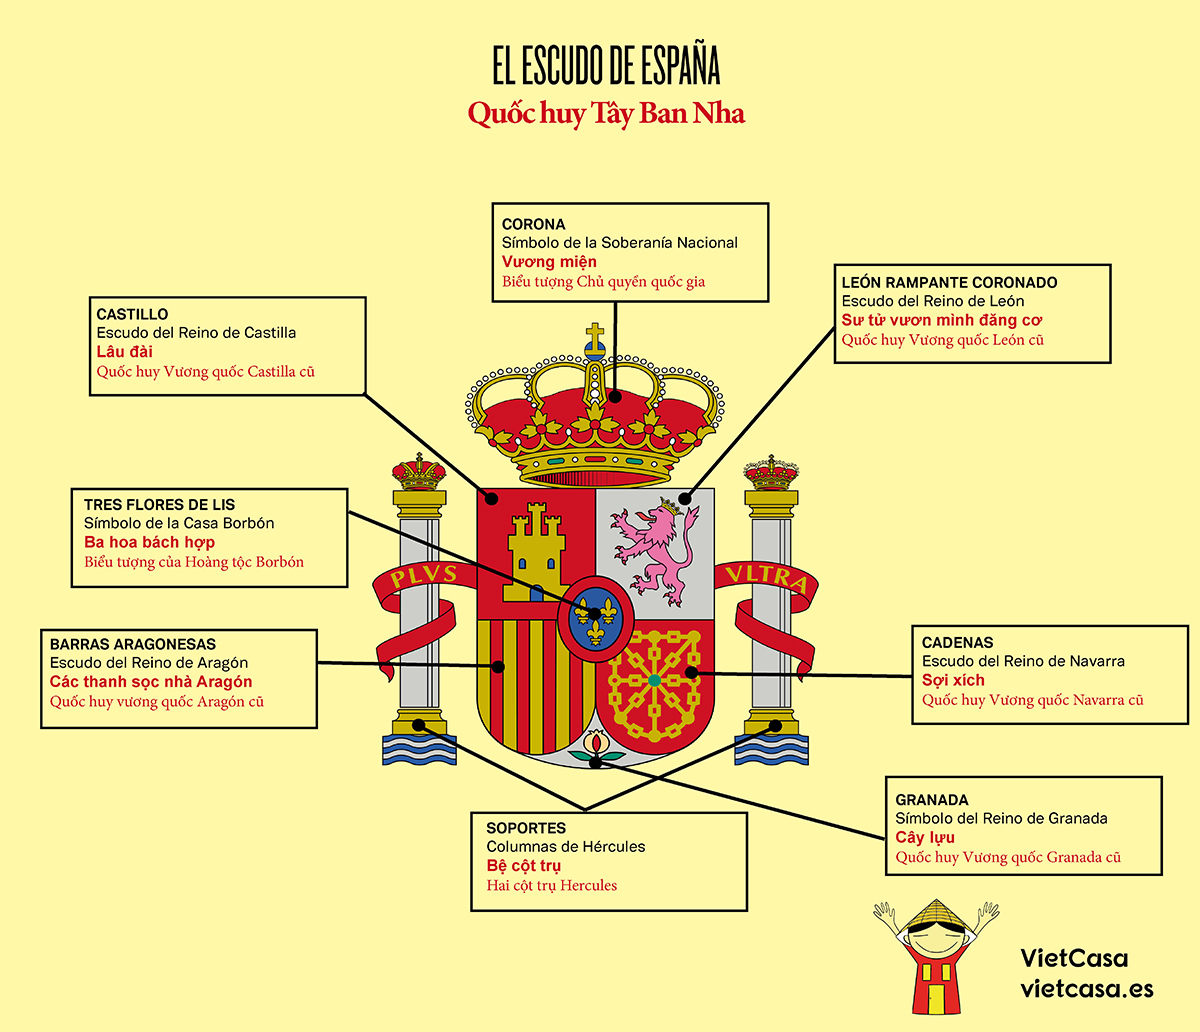 Quốc huy Tây Ban Nha: Biểu tượng của quốc gia Tây Ban Nha không những đơn thuần là một hình tròn màu đỏ và vàng. Nó thể hiện sự liên kết của nhiều vùng đất và văn hóa trải dài trên toàn quốc, từ núi đồi tới bờ biển. Hãy cùng khám phá ý nghĩa của những hình ảnh trên quốc huy này.